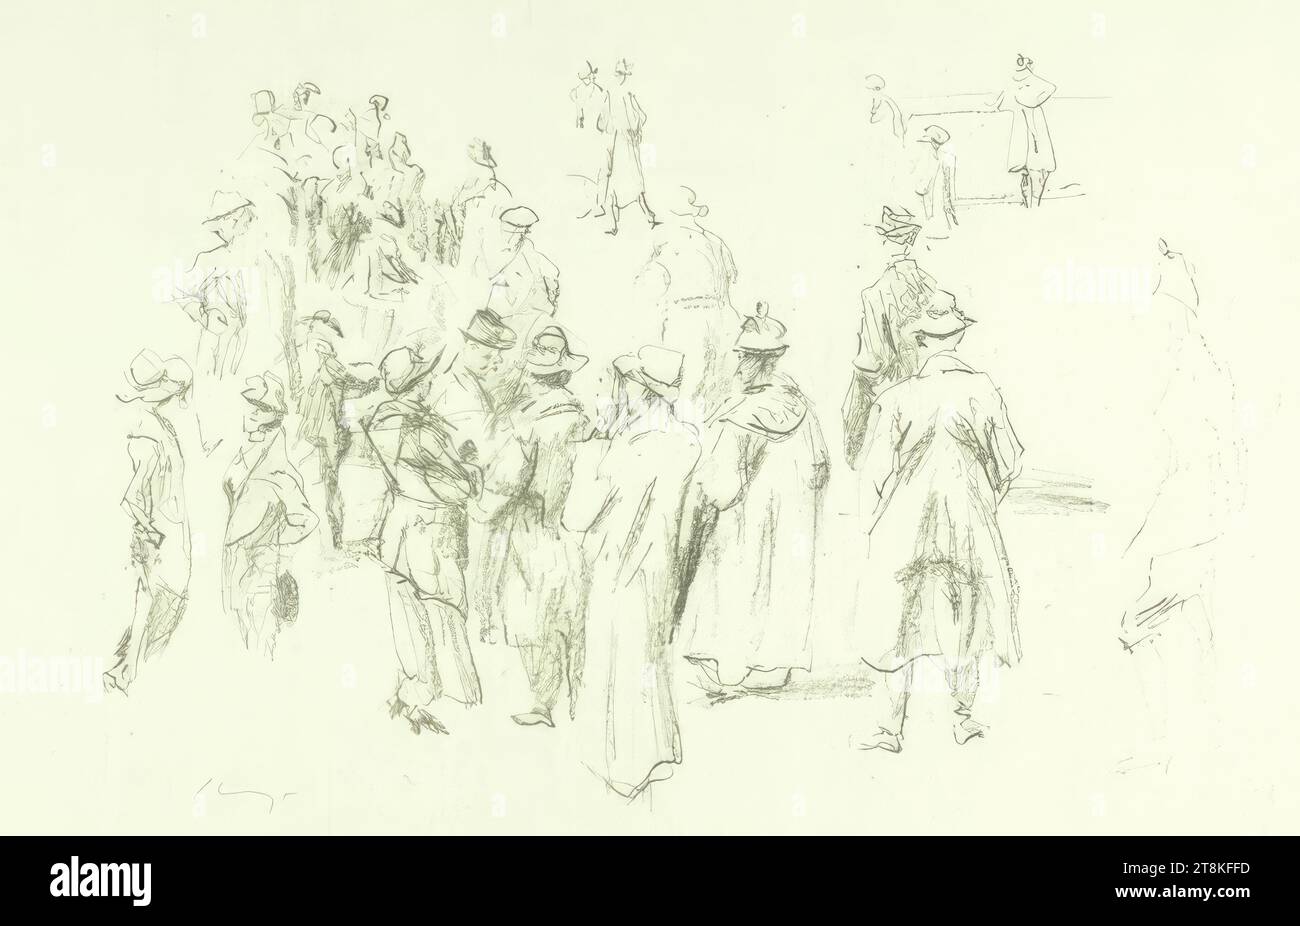 Courses attelées, courses attelées, Max Slevogt, Landshut 1868 - 1932 Neukastel/Pfalz, 1923, impression, lithographie à la craie sur papier chinois Banque D'Images